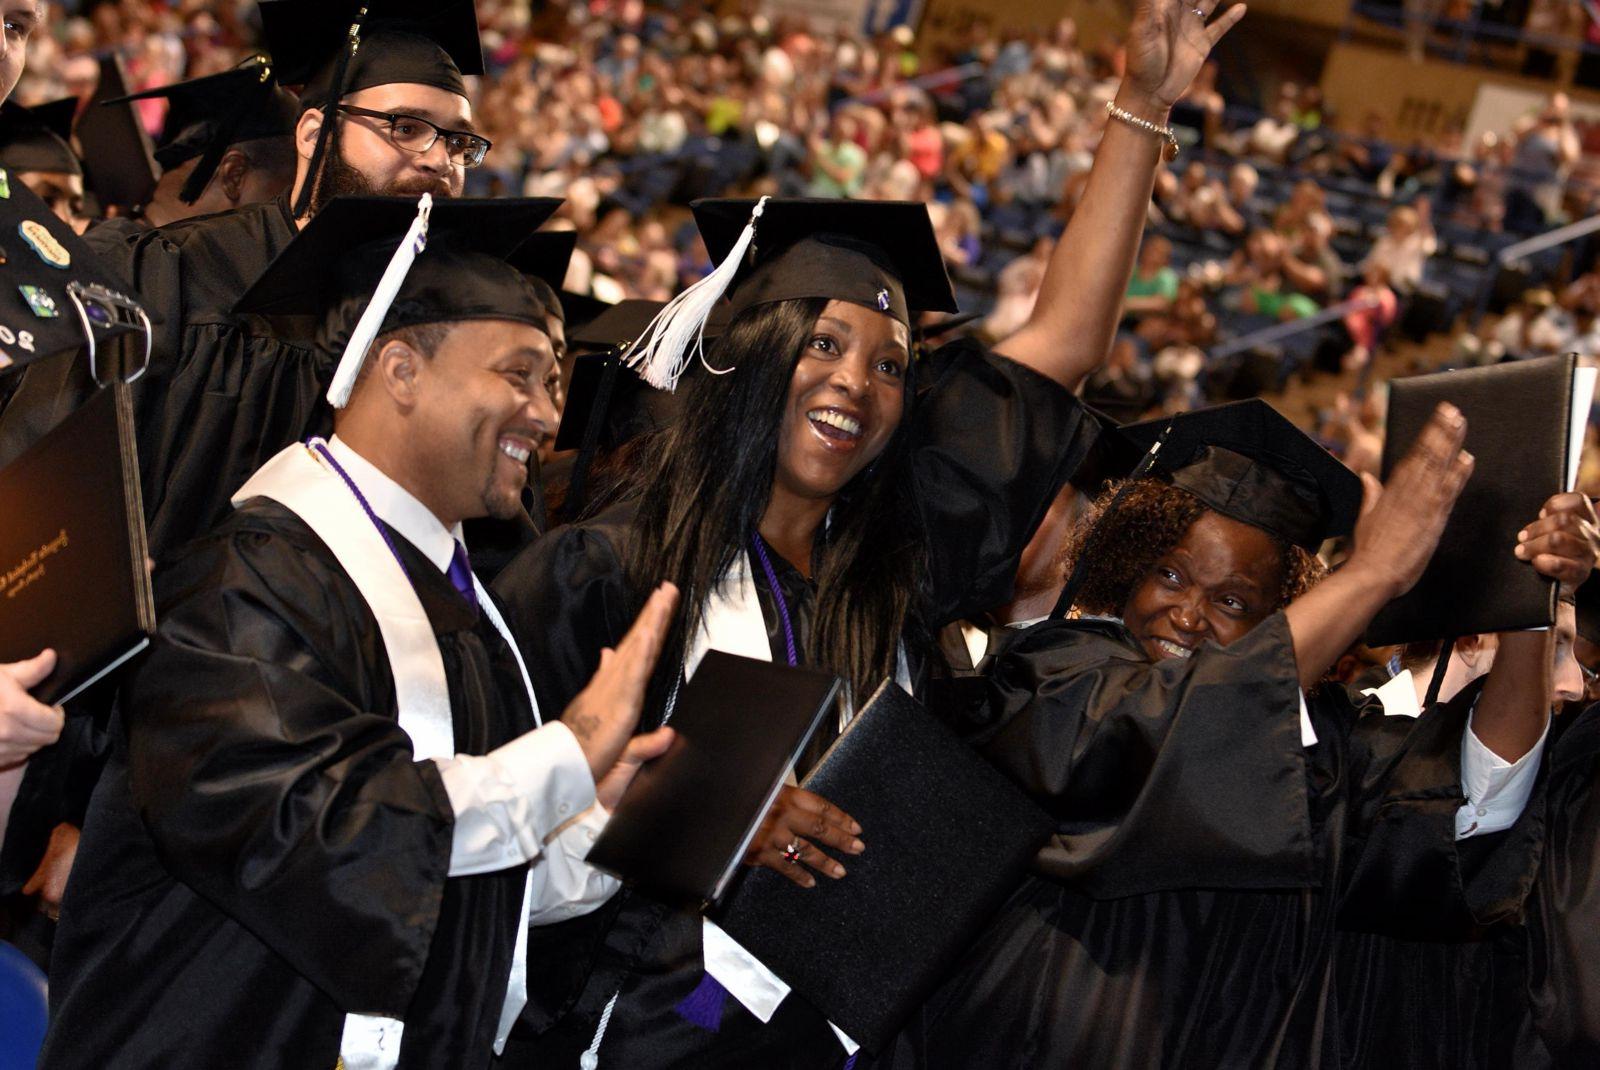 森林的绿色, 超链接, 白色的技术信用证书按钮, 粗体, 在文字下面加了下划线，上面是一群拥挤的毕业生和家人，他们的注意力集中在四名戴着黑色毕业帽、穿着白色流苏长袍和披肩的毕业生身上:一名非洲裔美国女性微笑着，左手举着一个黑人文凭/学位托, 在她的左边，一位非洲裔美国女性微笑着举起戴着金属手镯的右手，左手拿着她的黑人学位证书, 一位非裔美国男性微笑着站在那里，右手拿着他的黑人文凭/学位证书，左手举在后面, 一个留着黑胡子戴着眼镜的白人男性站在他们三人的右边.